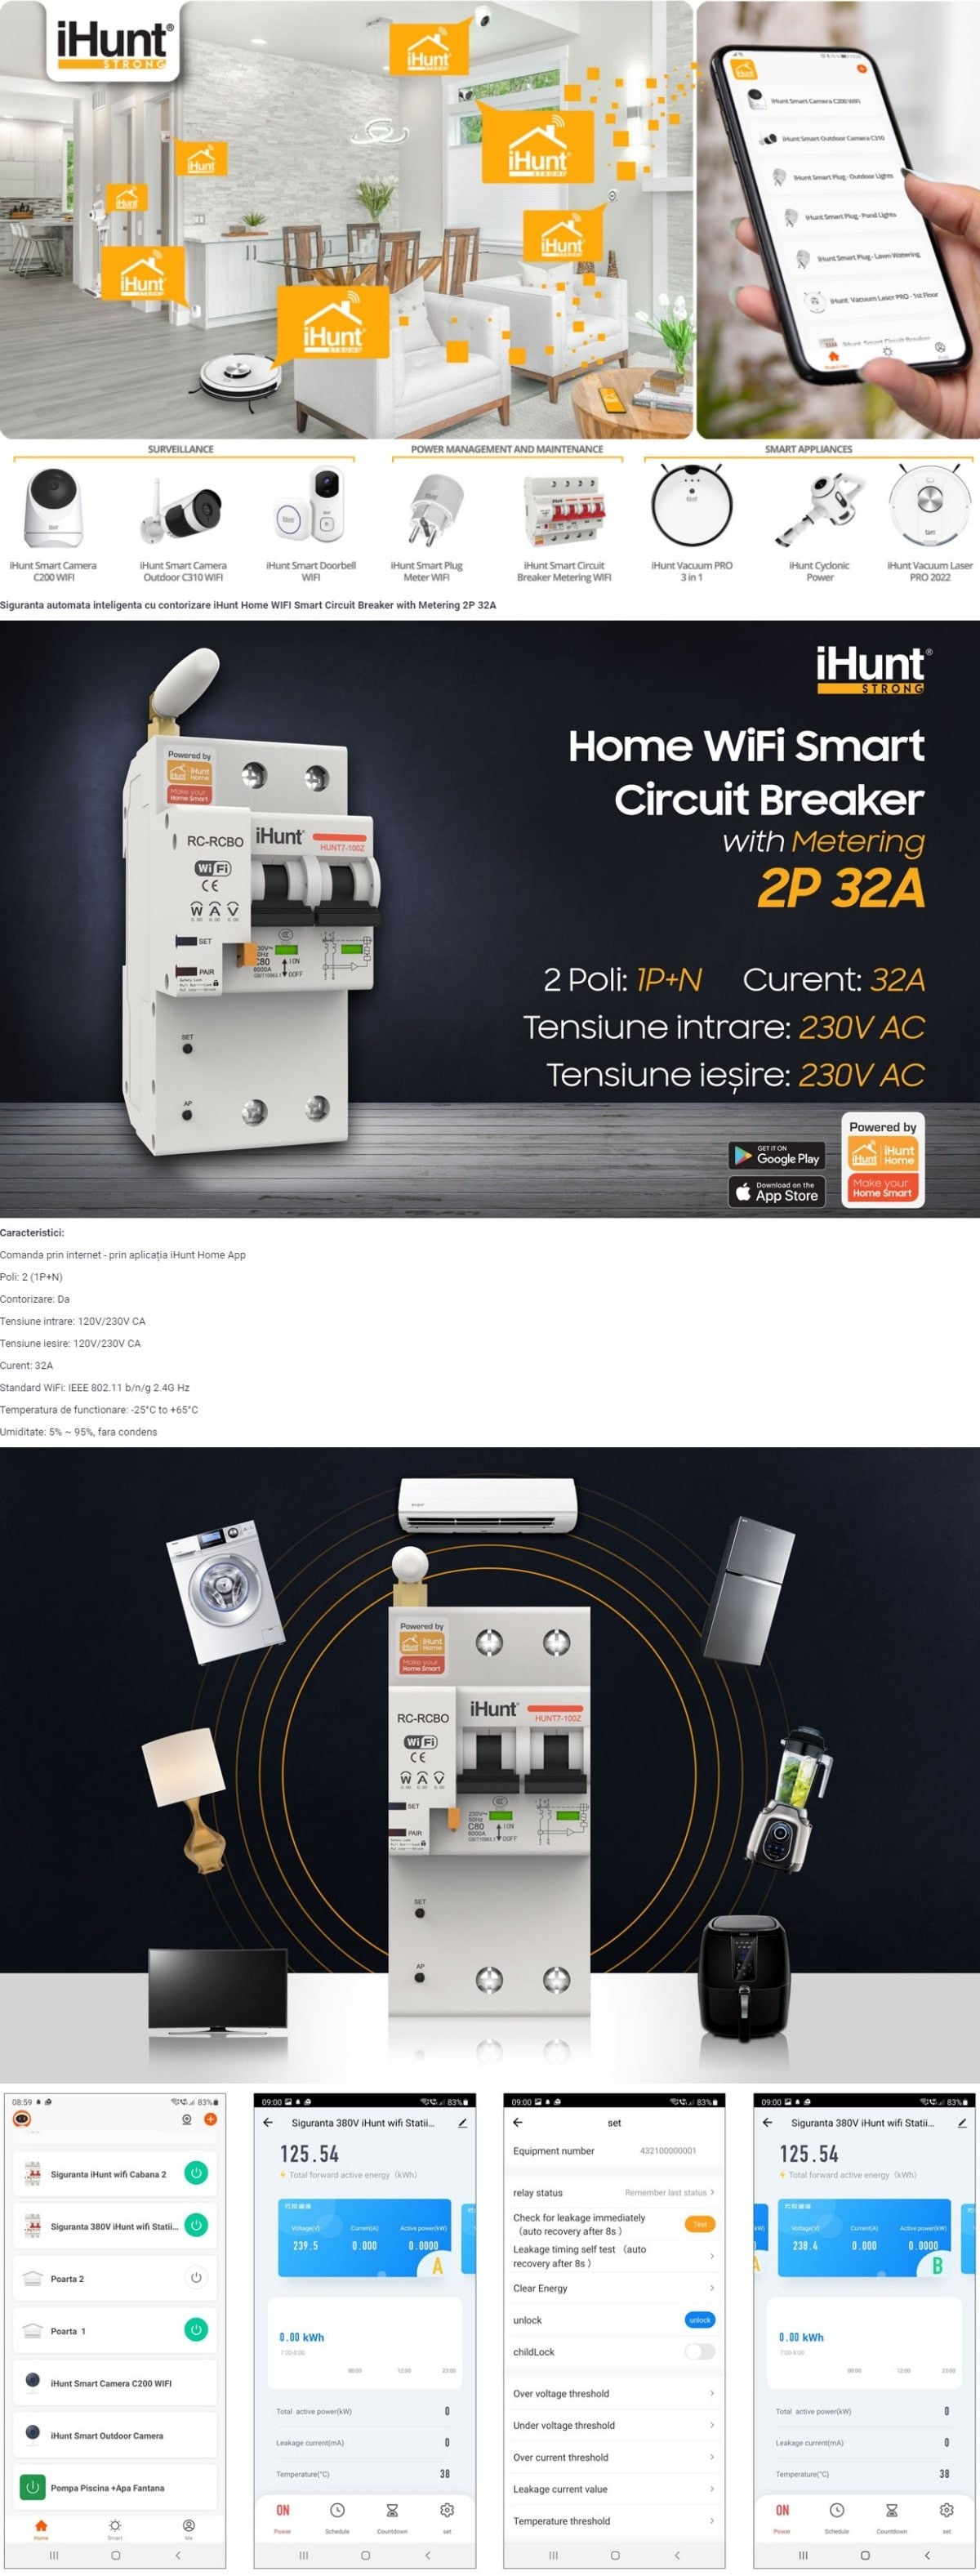 iHunt-Home-WIFI-Smart-Circuit-Breaker-Metering-2P-32A85a773481b636c25.jpg